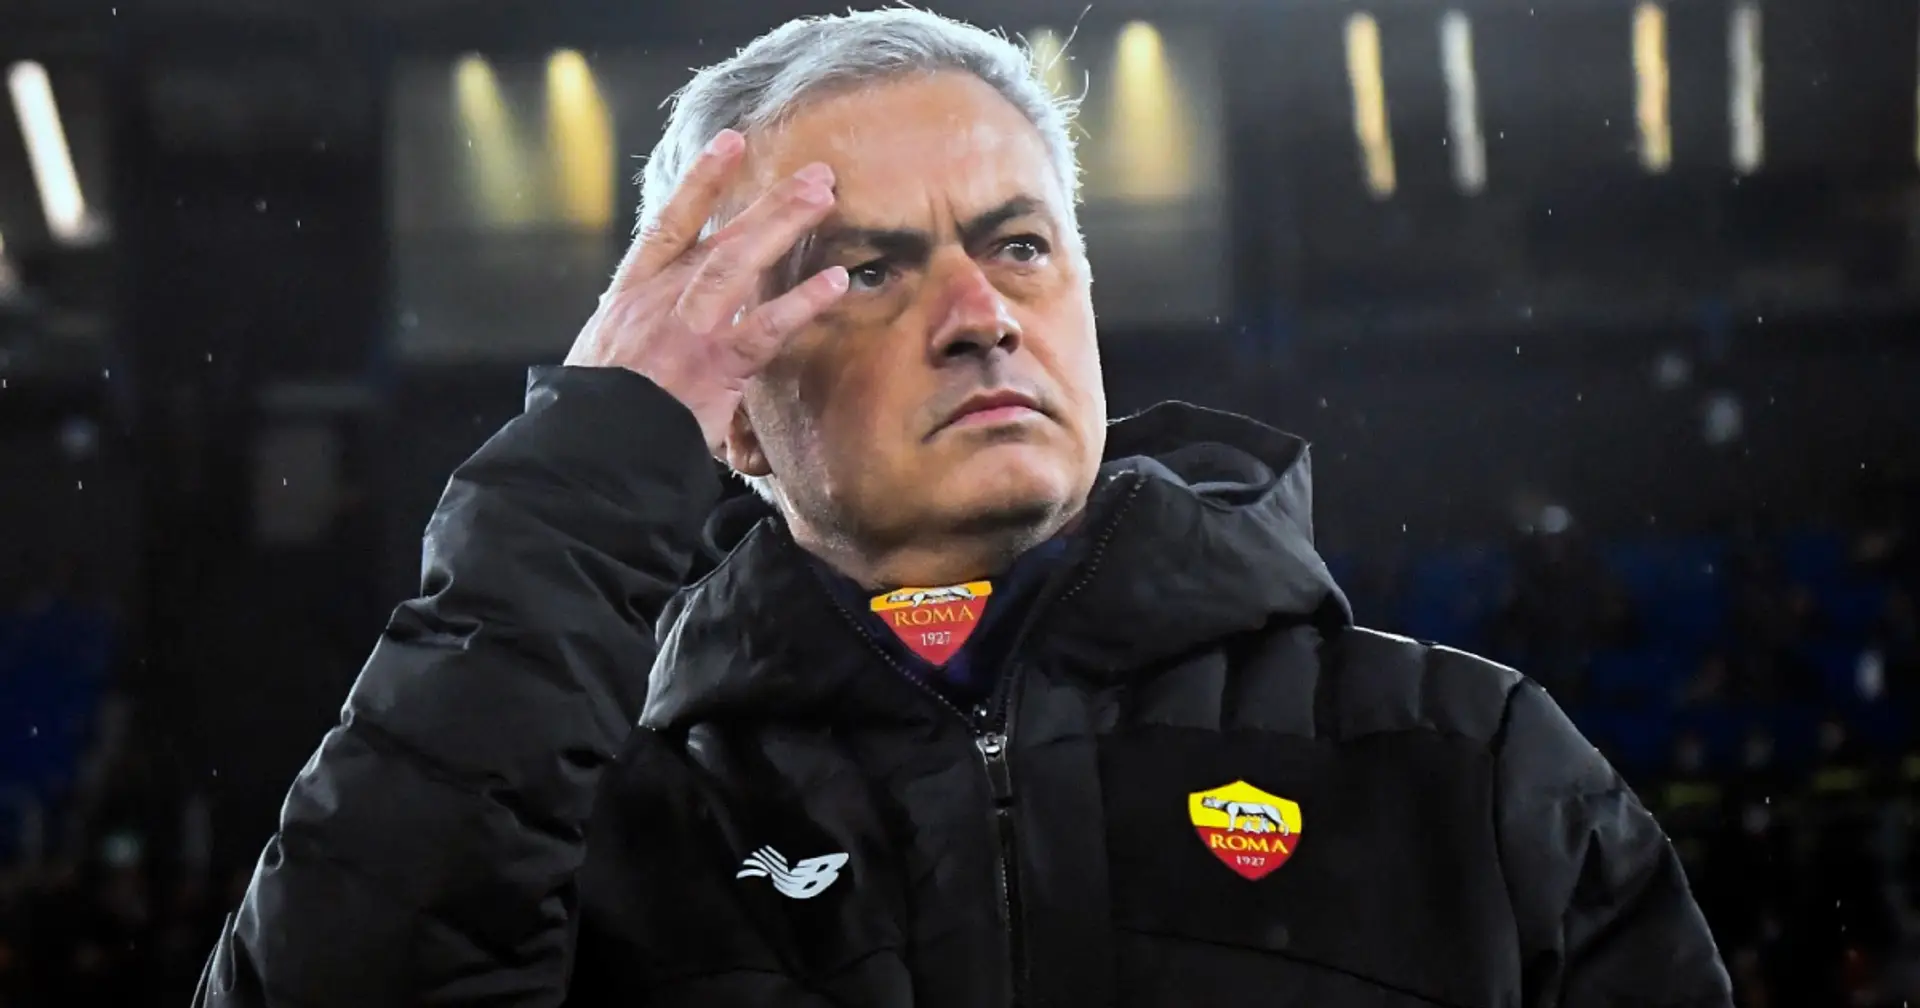 "Es ist nicht möglich, mit ihm normal zu arbeiten": Ex-Roma-Sportdirektor enthüllt Mourinhos Standards für Mitarbeiter 